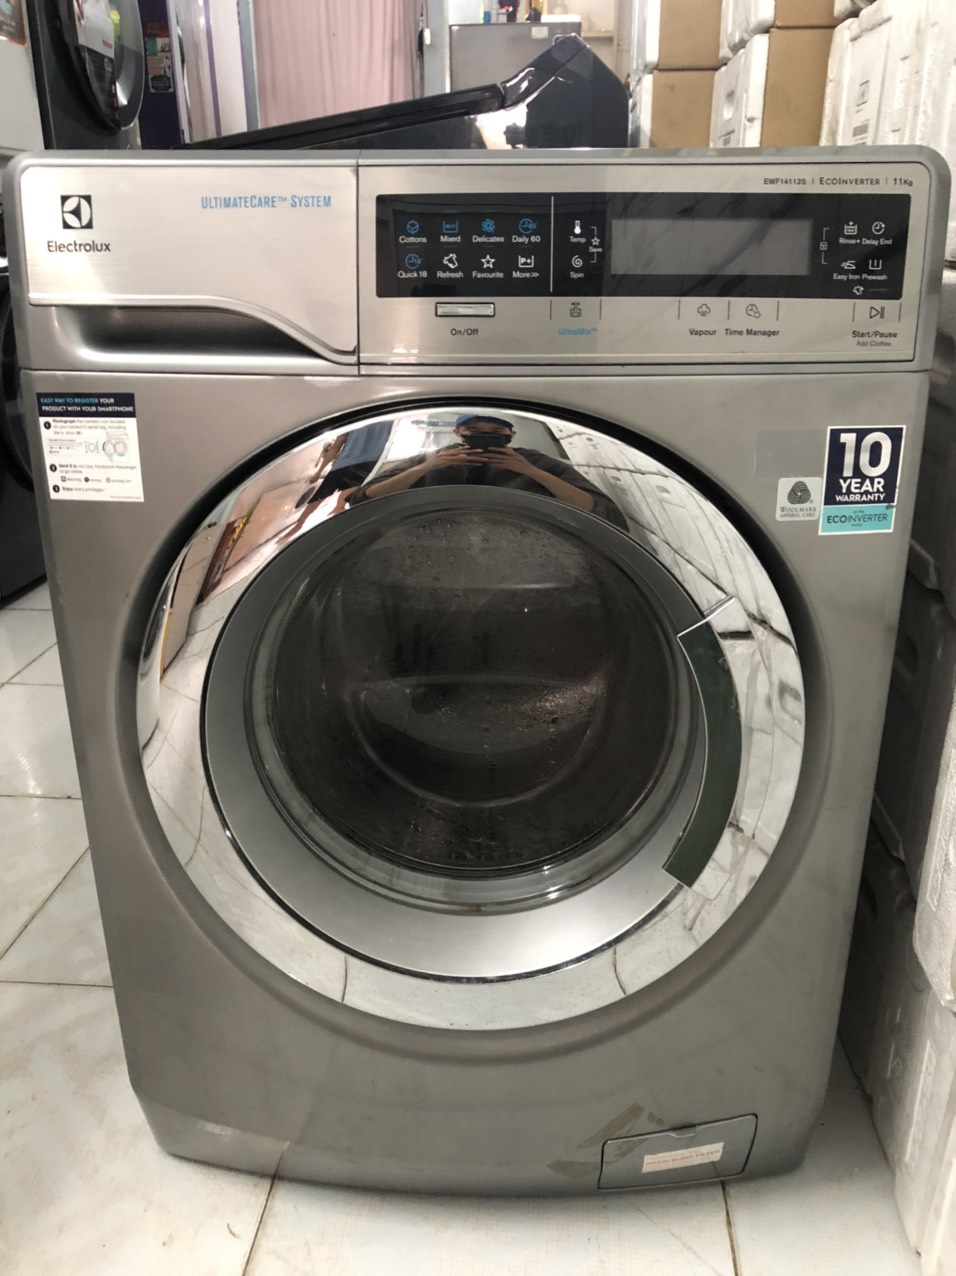 Sửa máy giặt tại nhà ở Nhà Bè 0906 463 467 Mr Bình